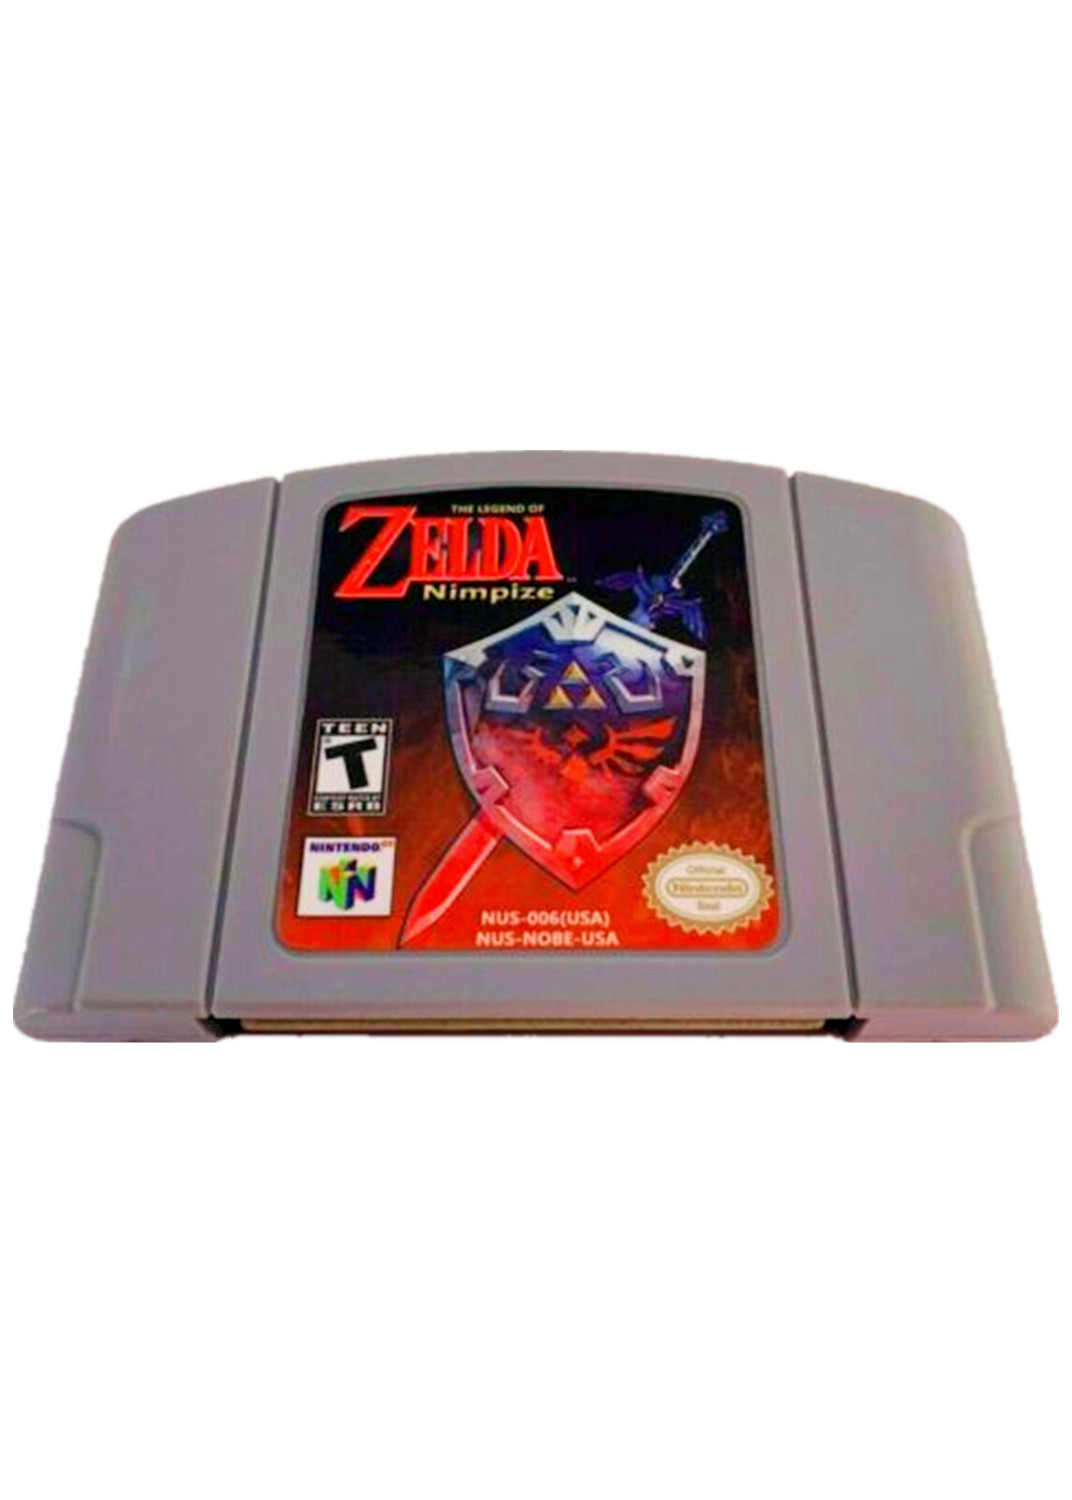 The Legend of Zelda Nimpize Game Cartridge For Nintendo 64 N64 USA Version